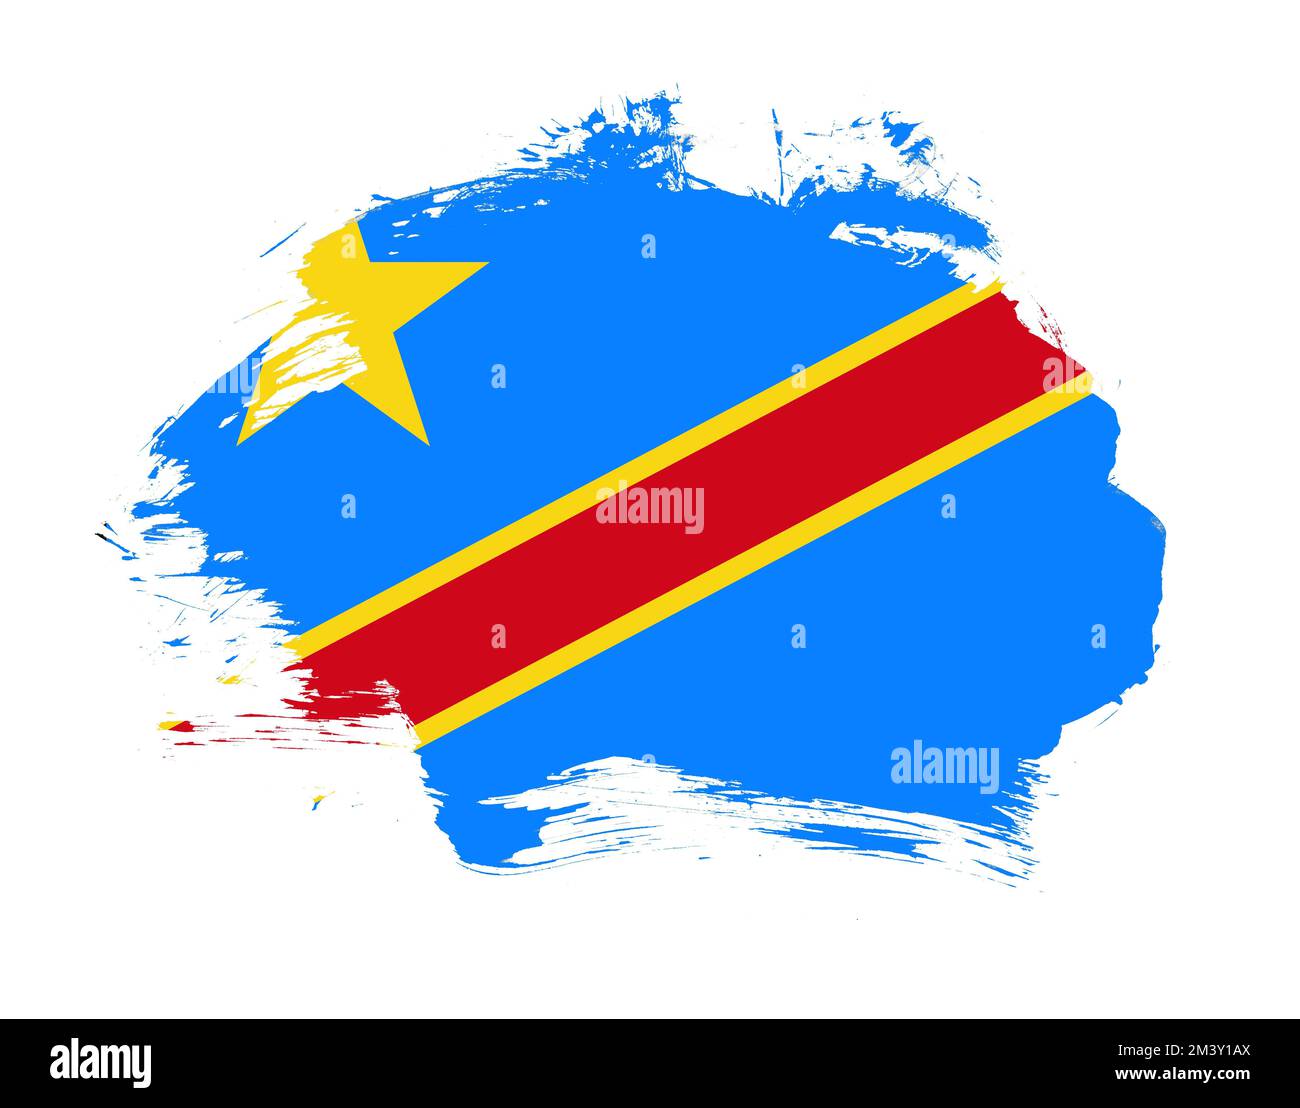 Die Flagge der Demokratischen republik kongo ist auf einem Hintergrund mit minimalem Pinselstrich gezeichnet Stockfoto